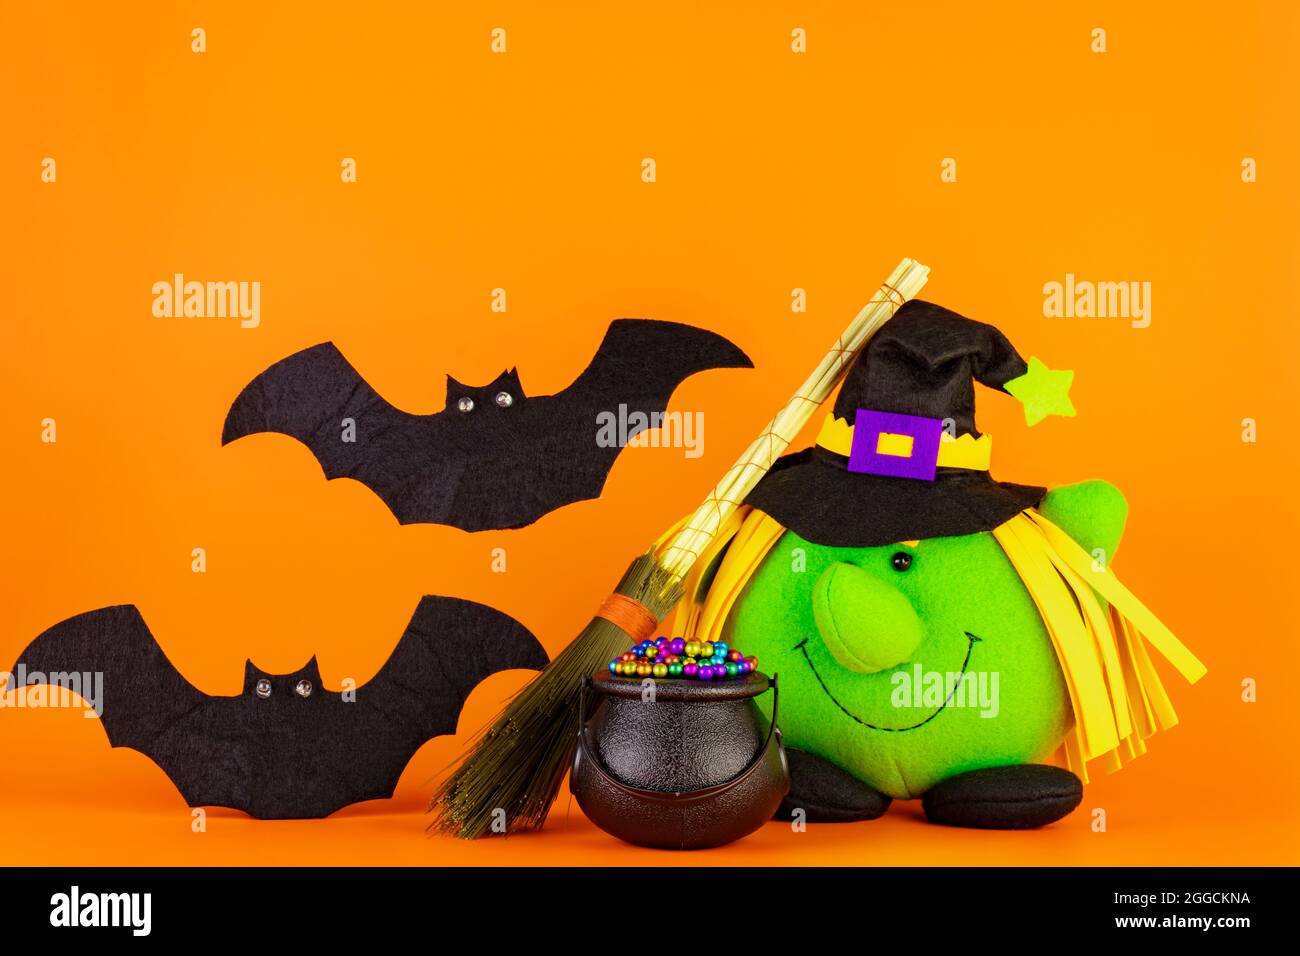 Bambola di strega verde, con il suo cauldron e il broomstick insieme a due graziosi pipistrelli su sfondo giallo arancione. Concetto di tema di Halloween. Foto Stock